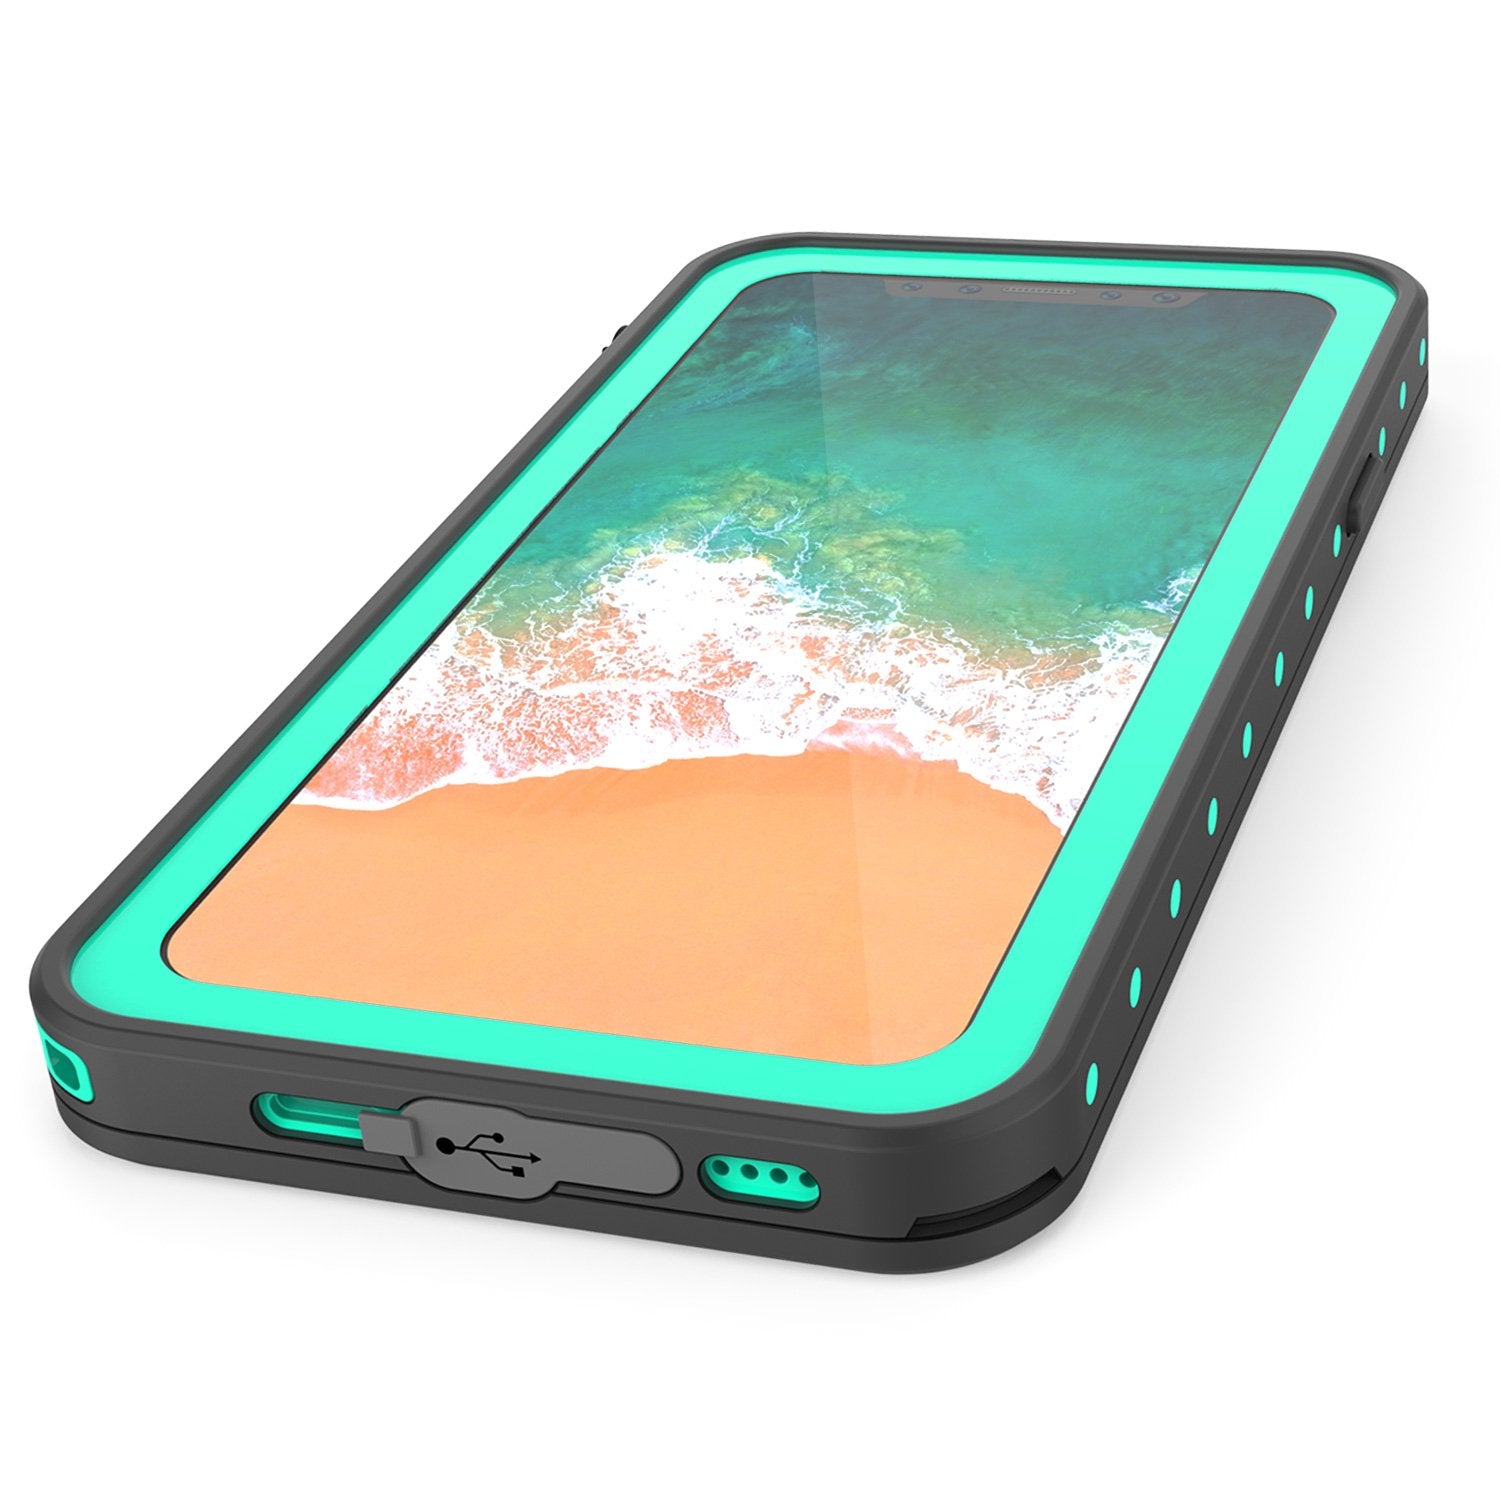 iPhone X Waterproof IP68 Case, Punkcase [Teal] [StudStar Series] [Slim Fit] [Dirtproof]